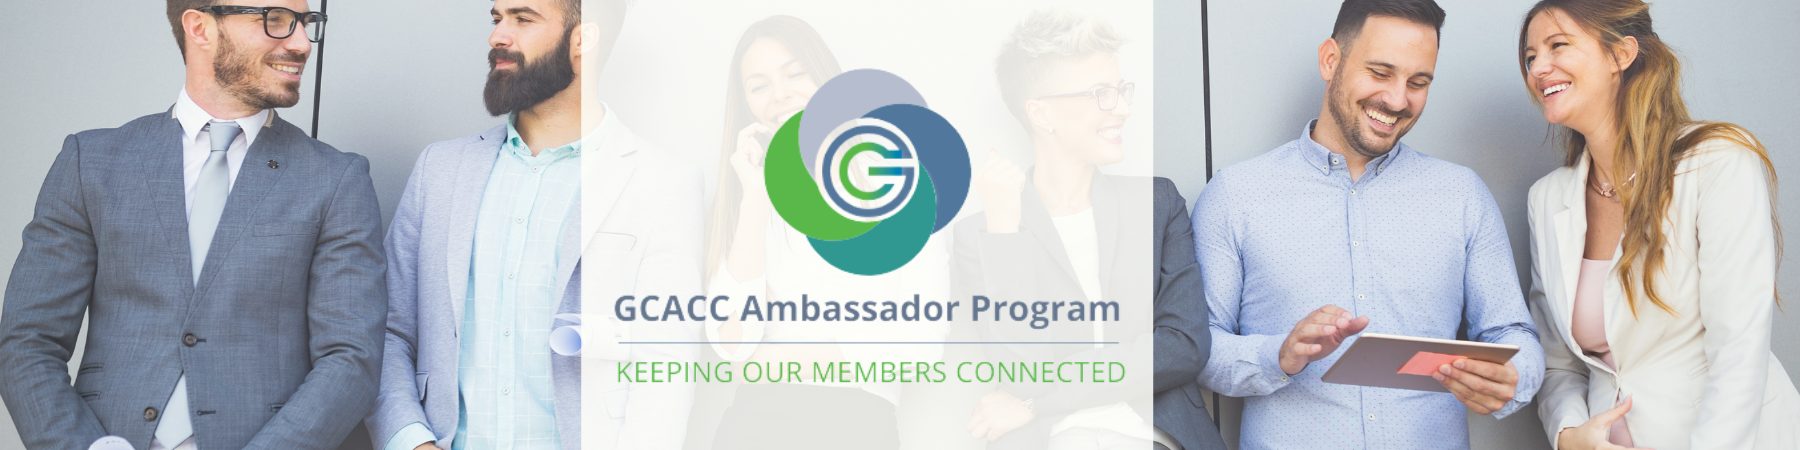 GC Ambassador Banner (2)